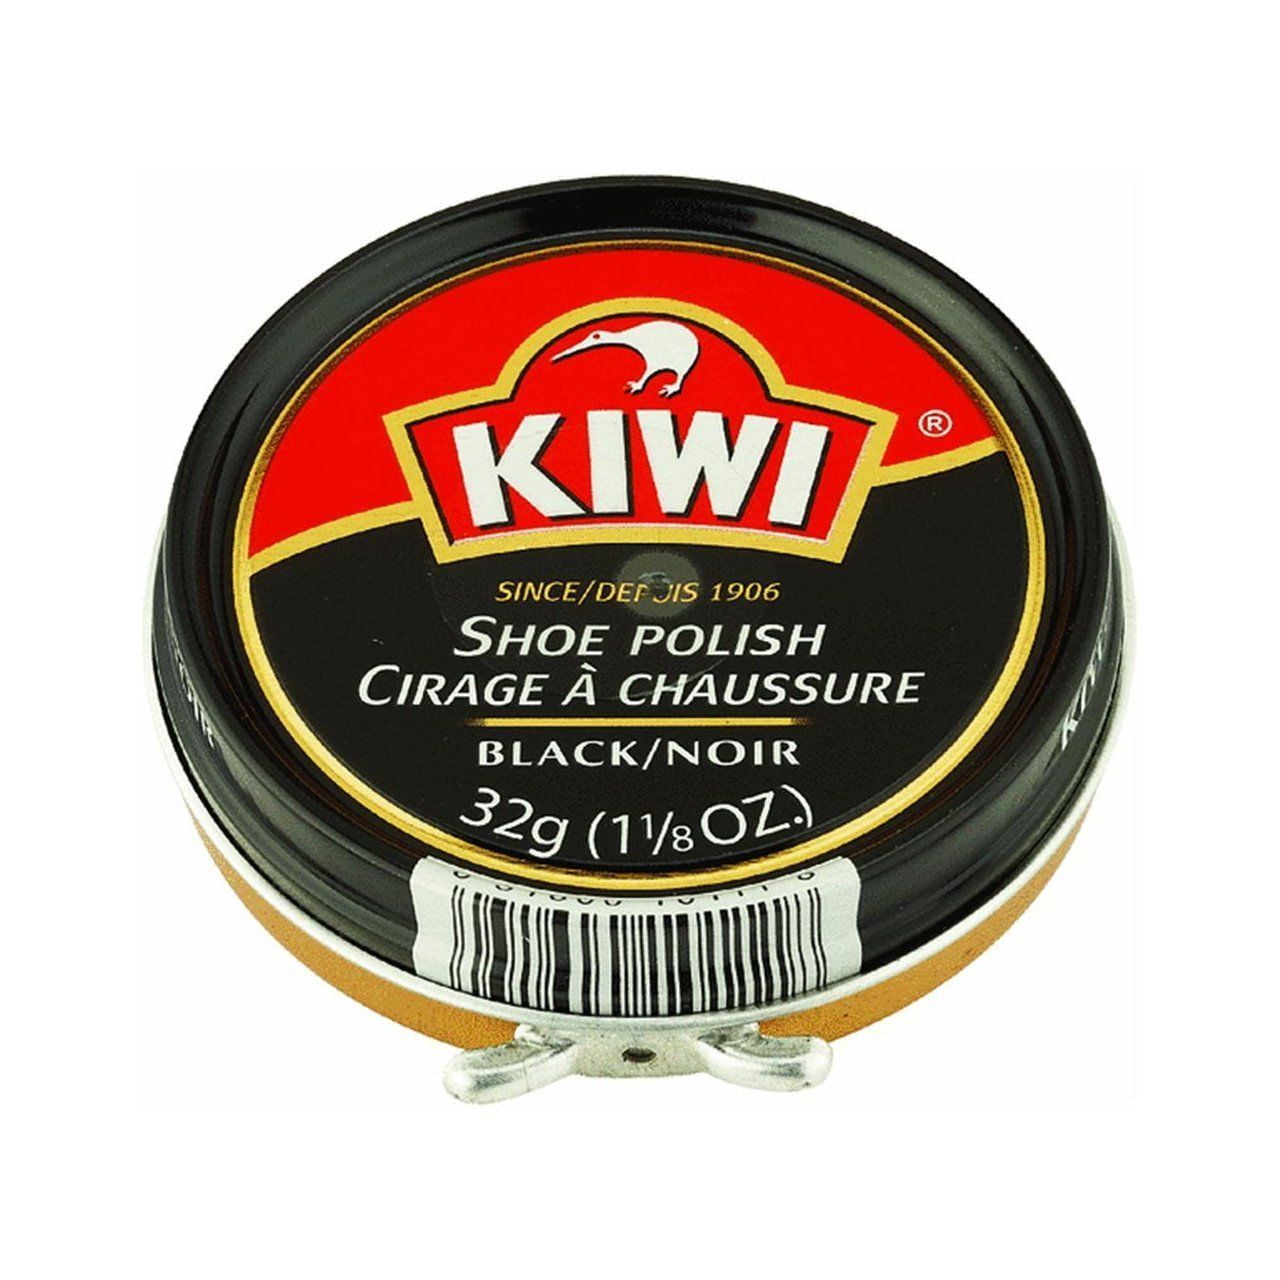 opening kiwi shoe polish